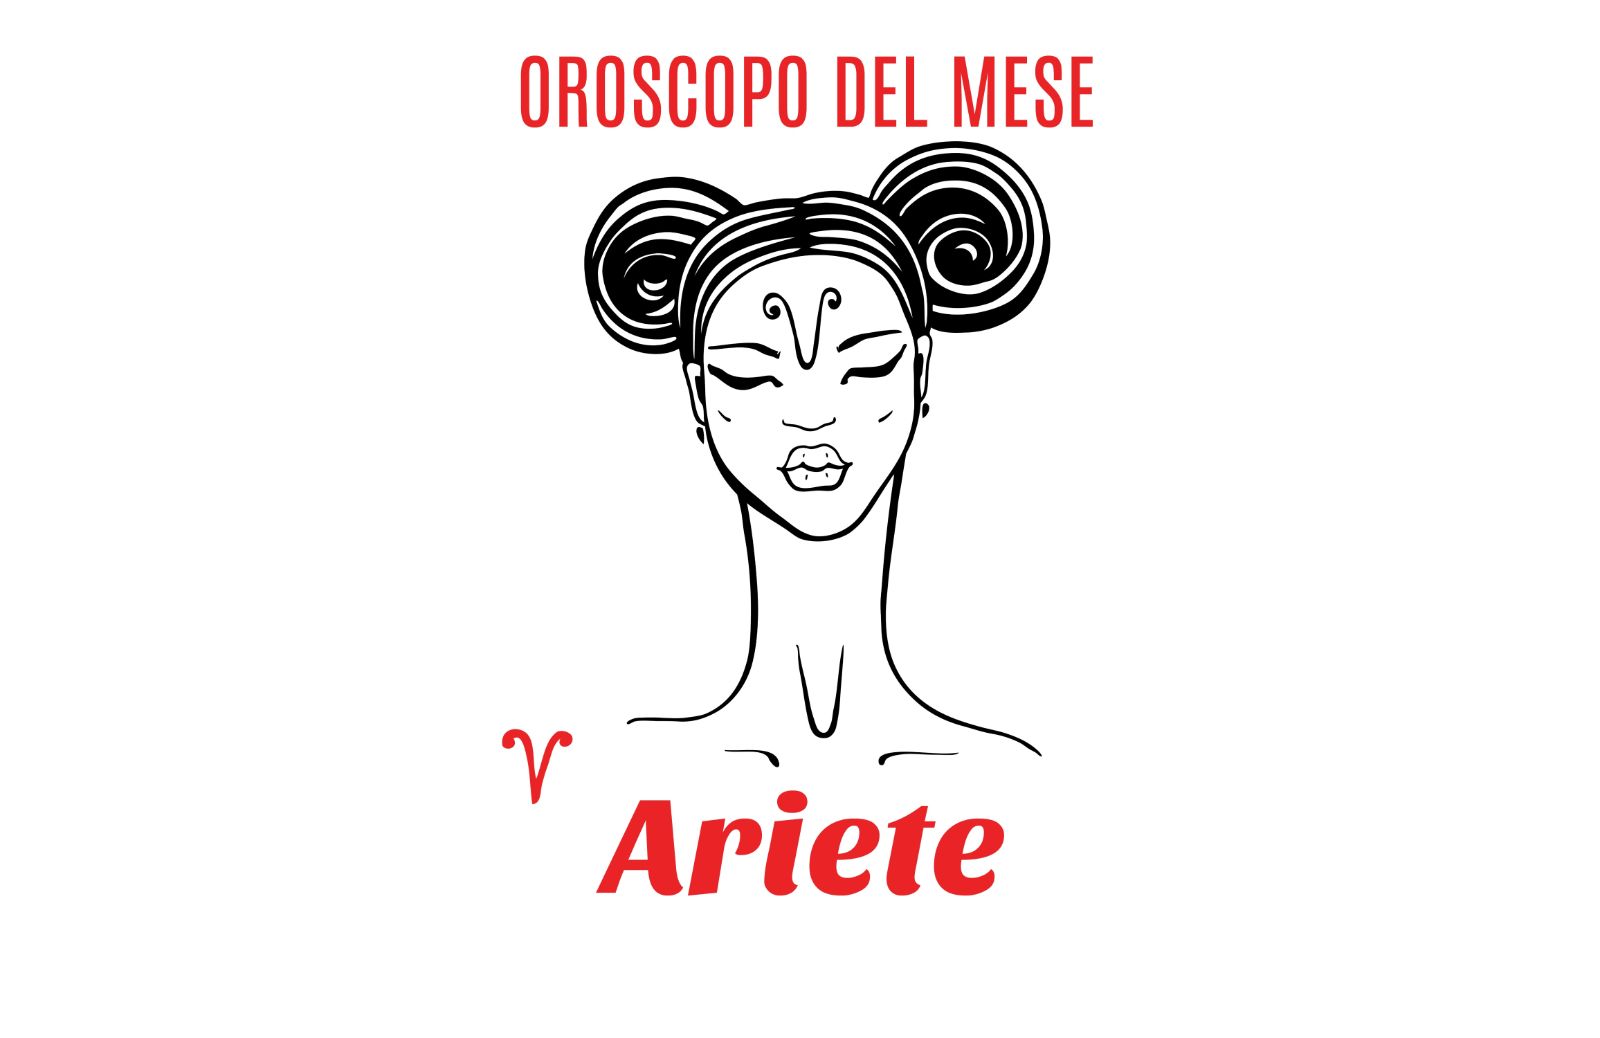 Oroscopo del mese: Ariete - aprile 2019